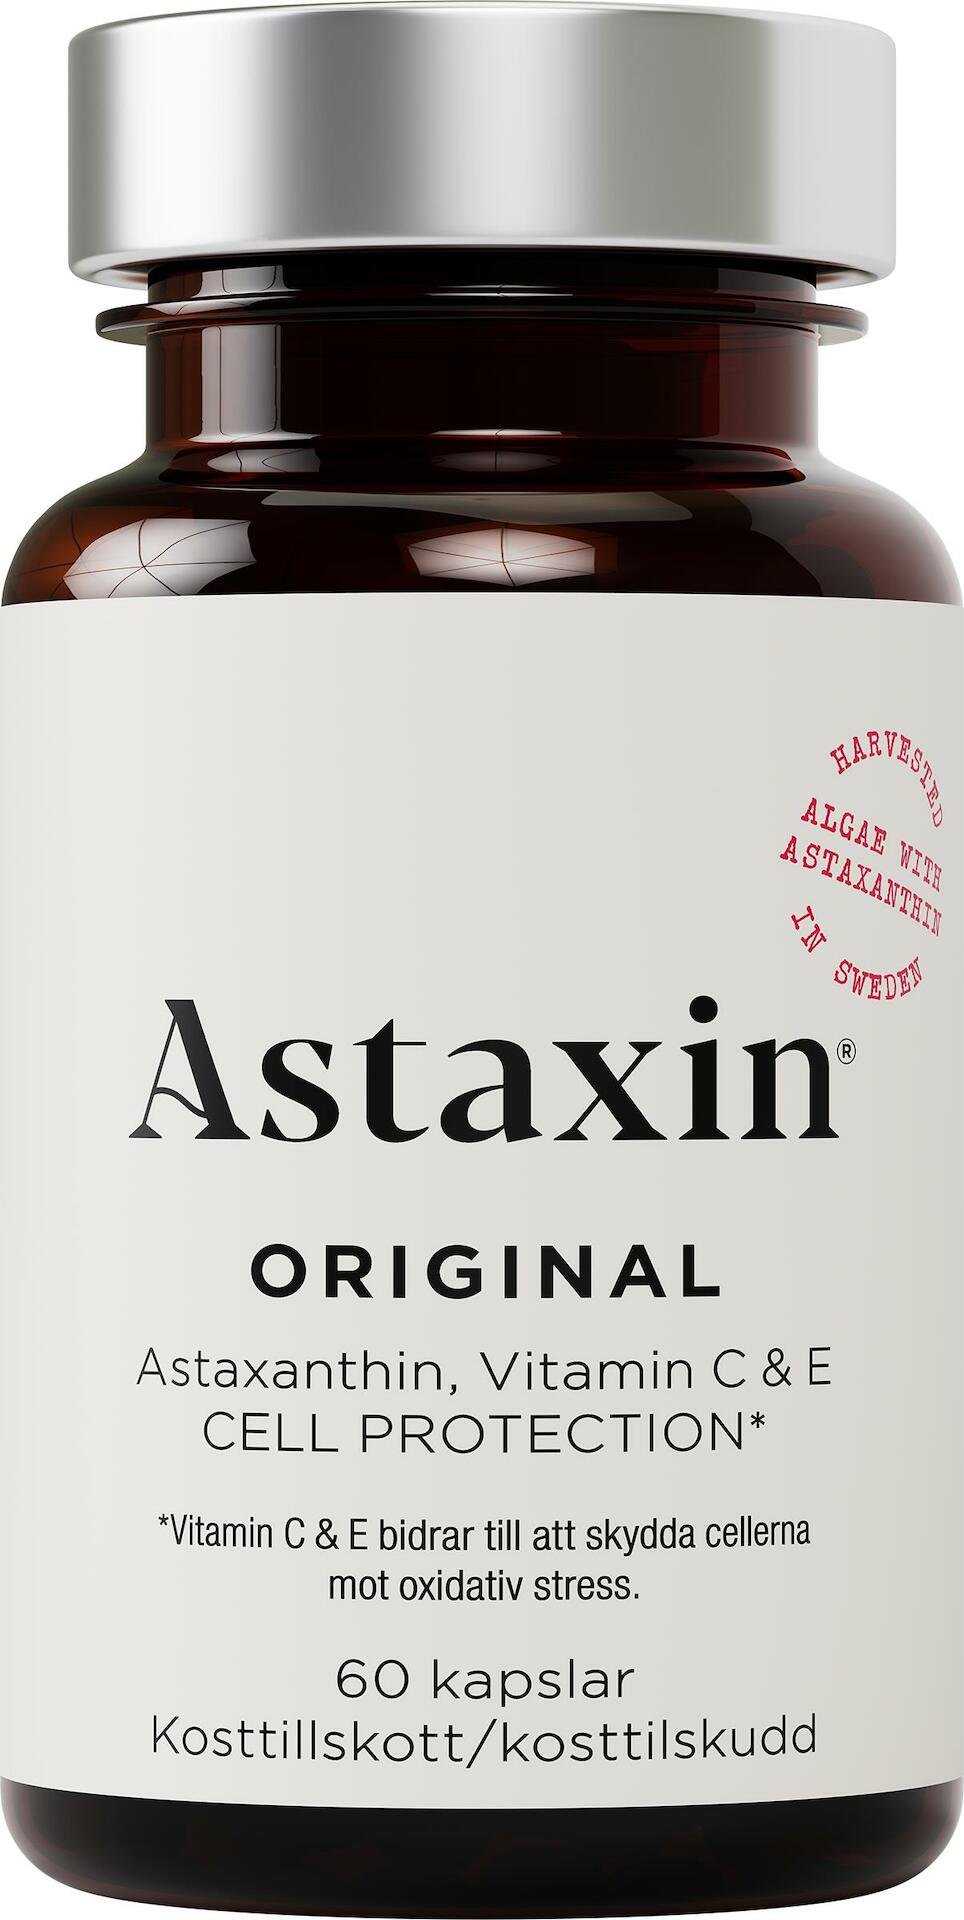 Astaxin 60 kapslar